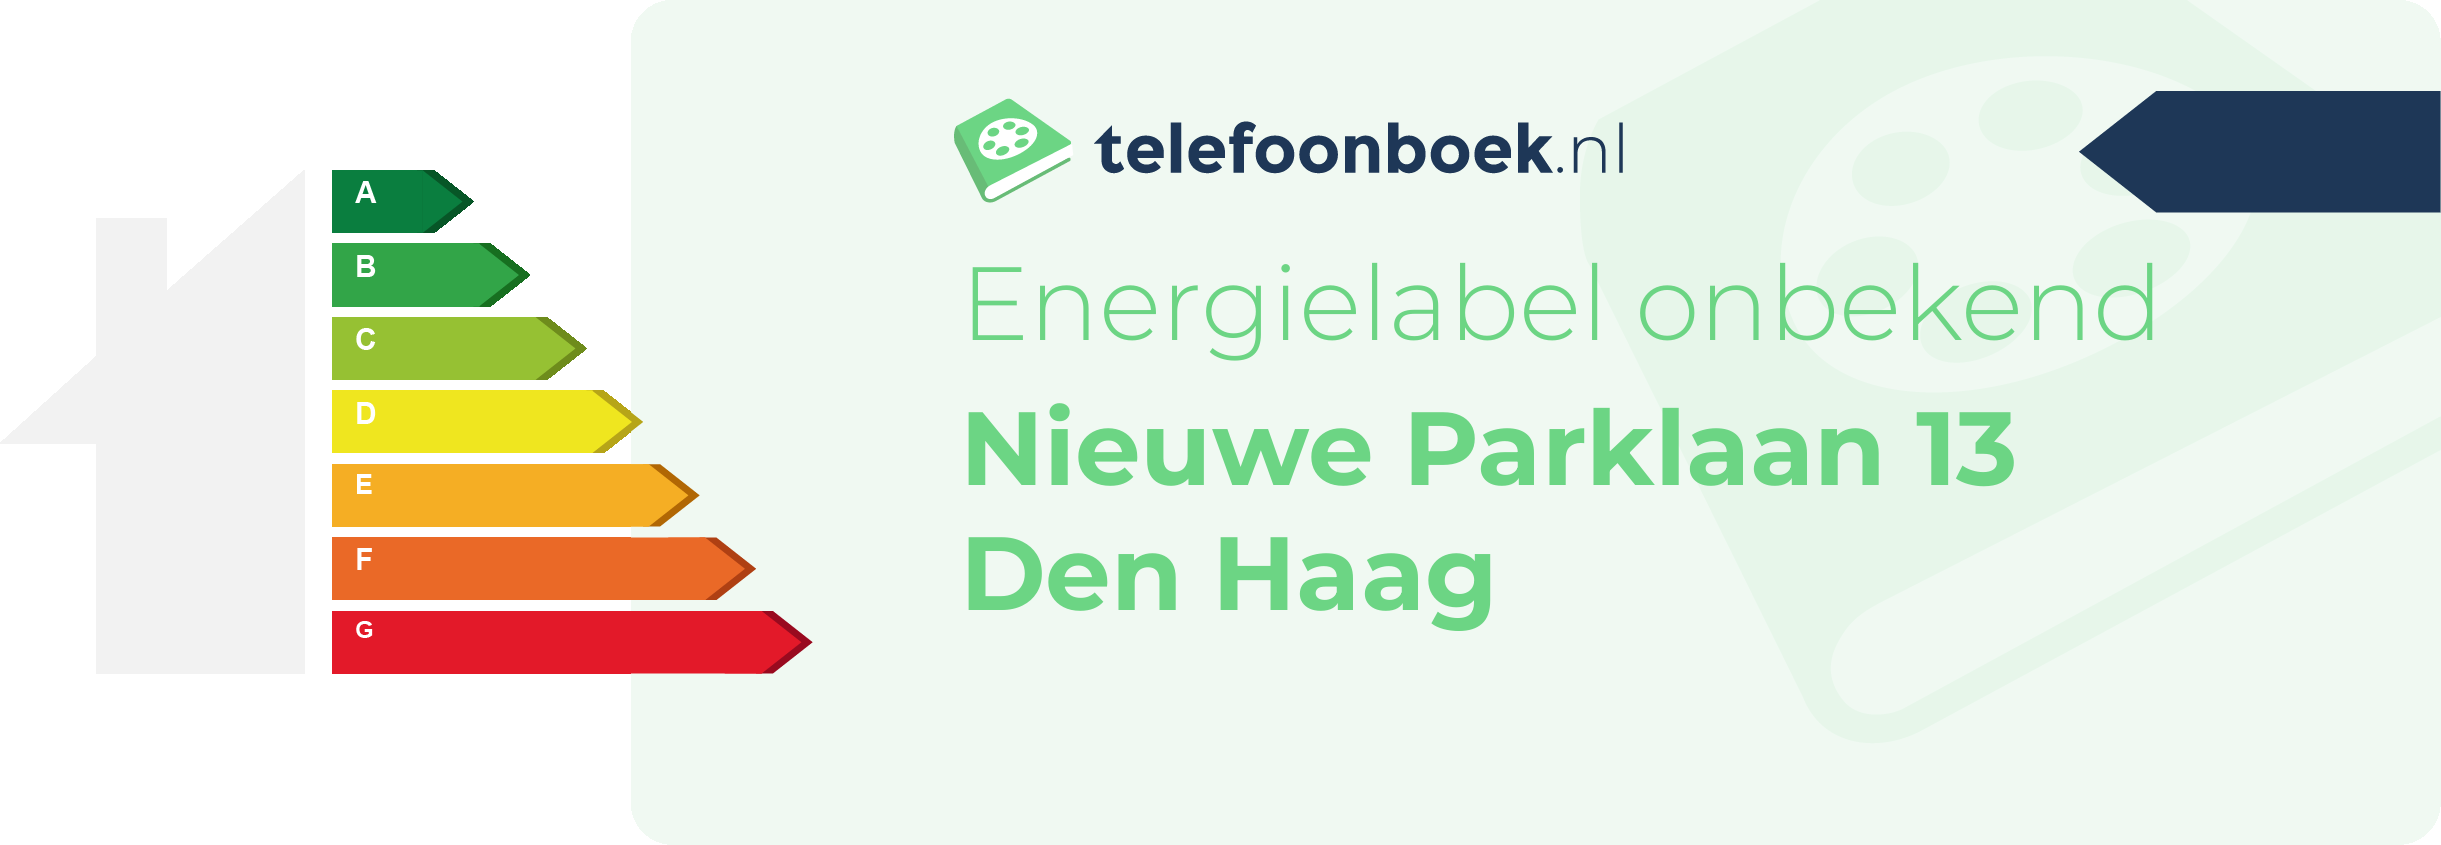 Energielabel Nieuwe Parklaan 13 Den Haag